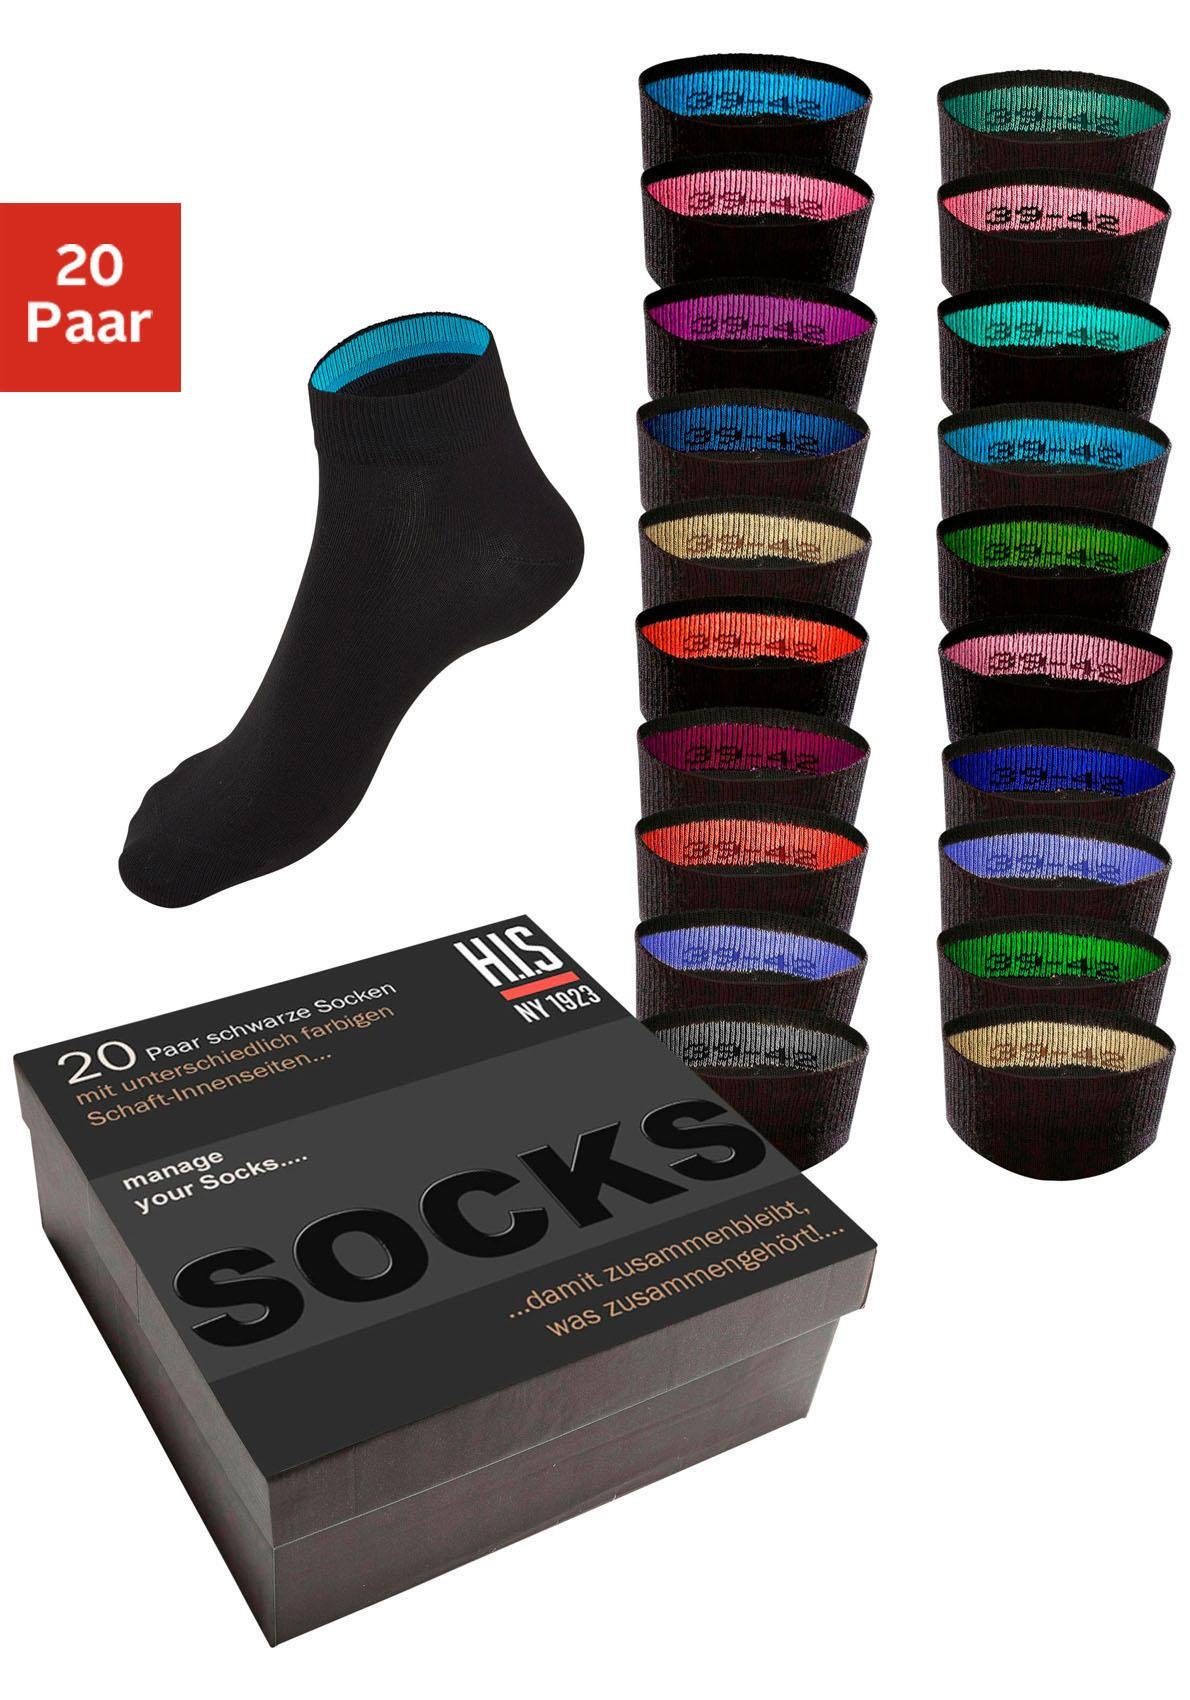 H.I.S Короткі шкарпетки (Box, 20-Paar) in praktischer Geschenkbox